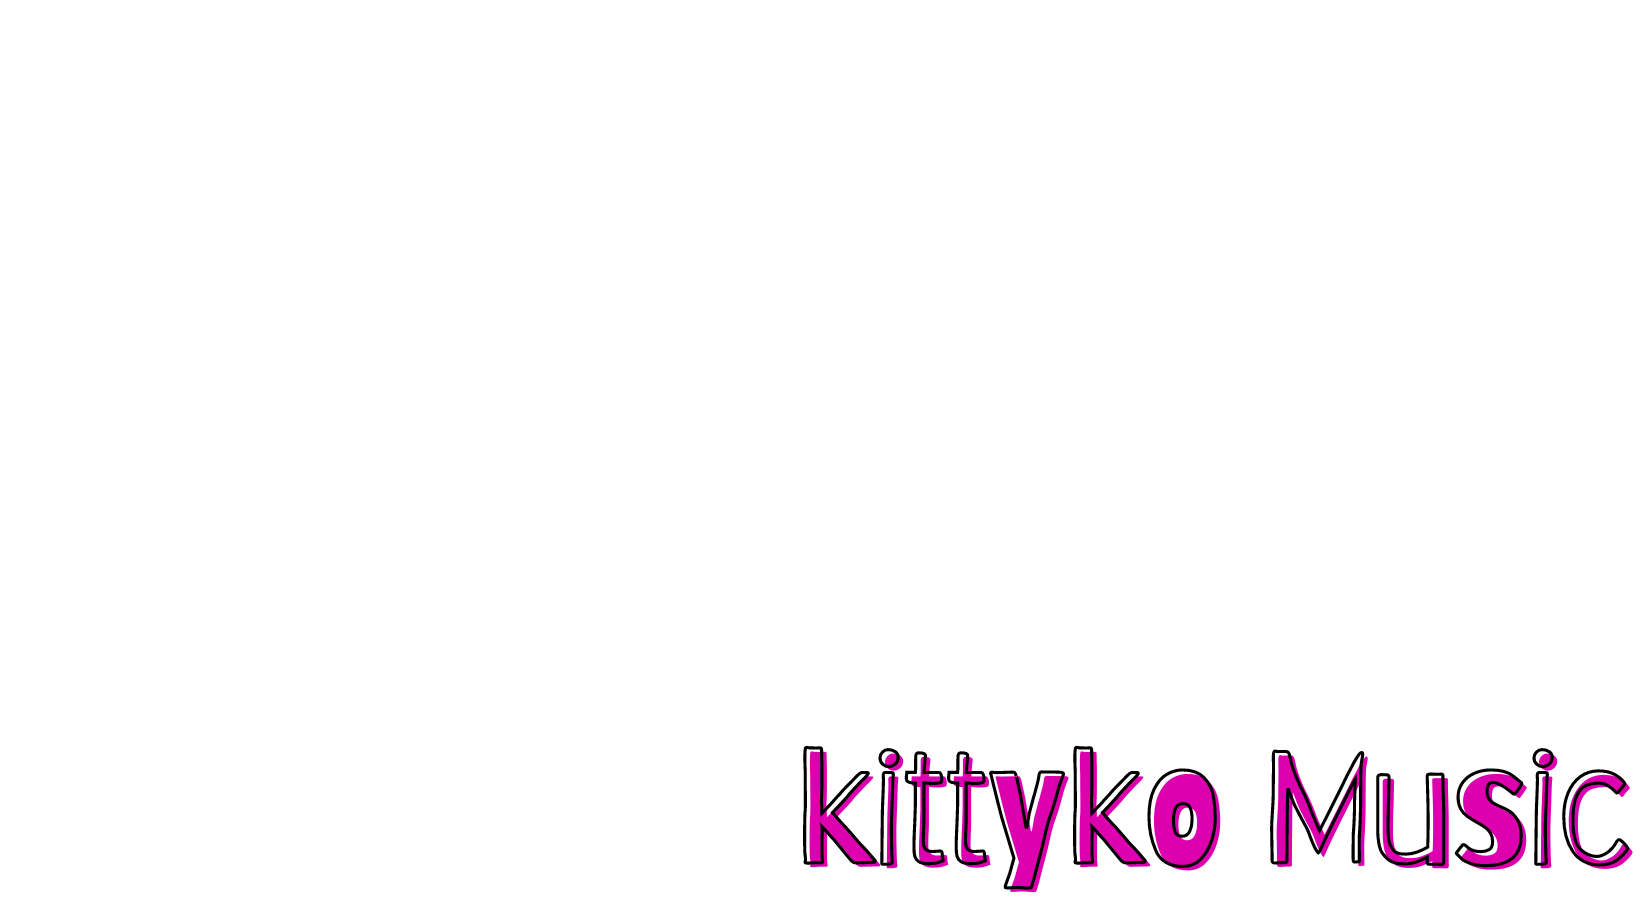                                Kittyko Music & Education